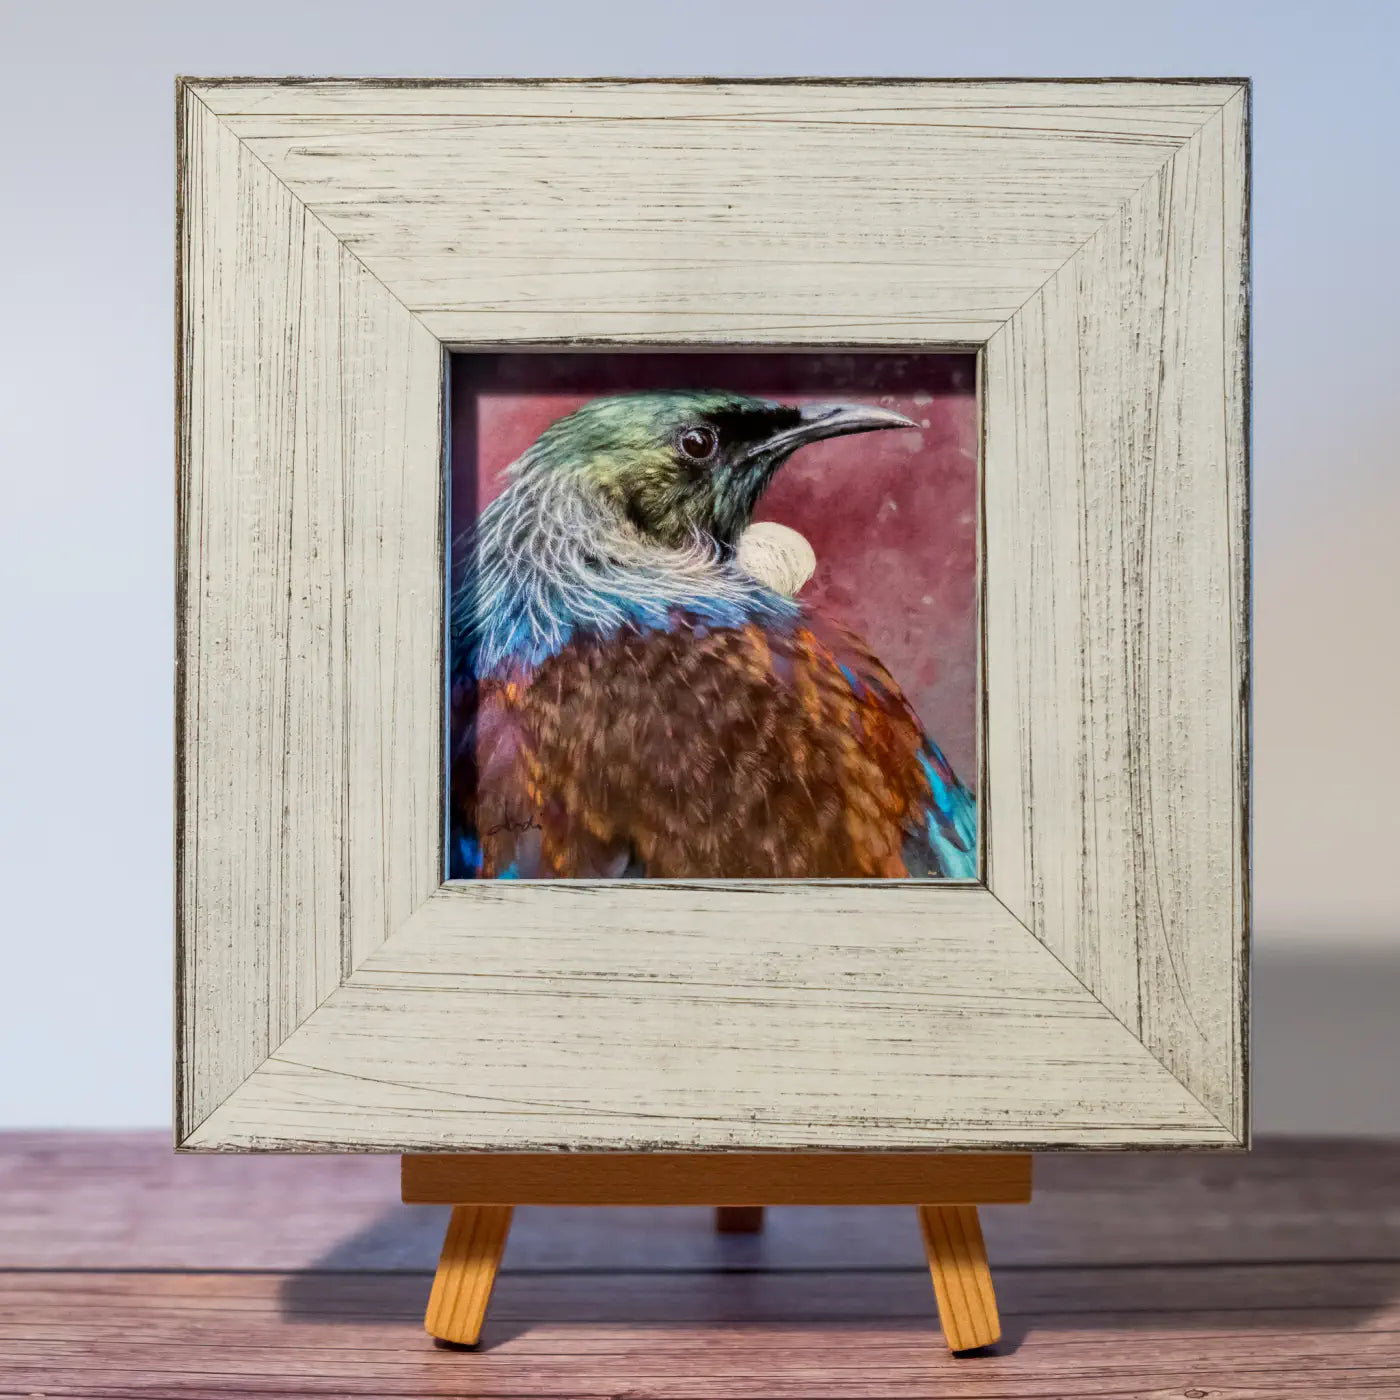 Tiny framed artwork of a tui